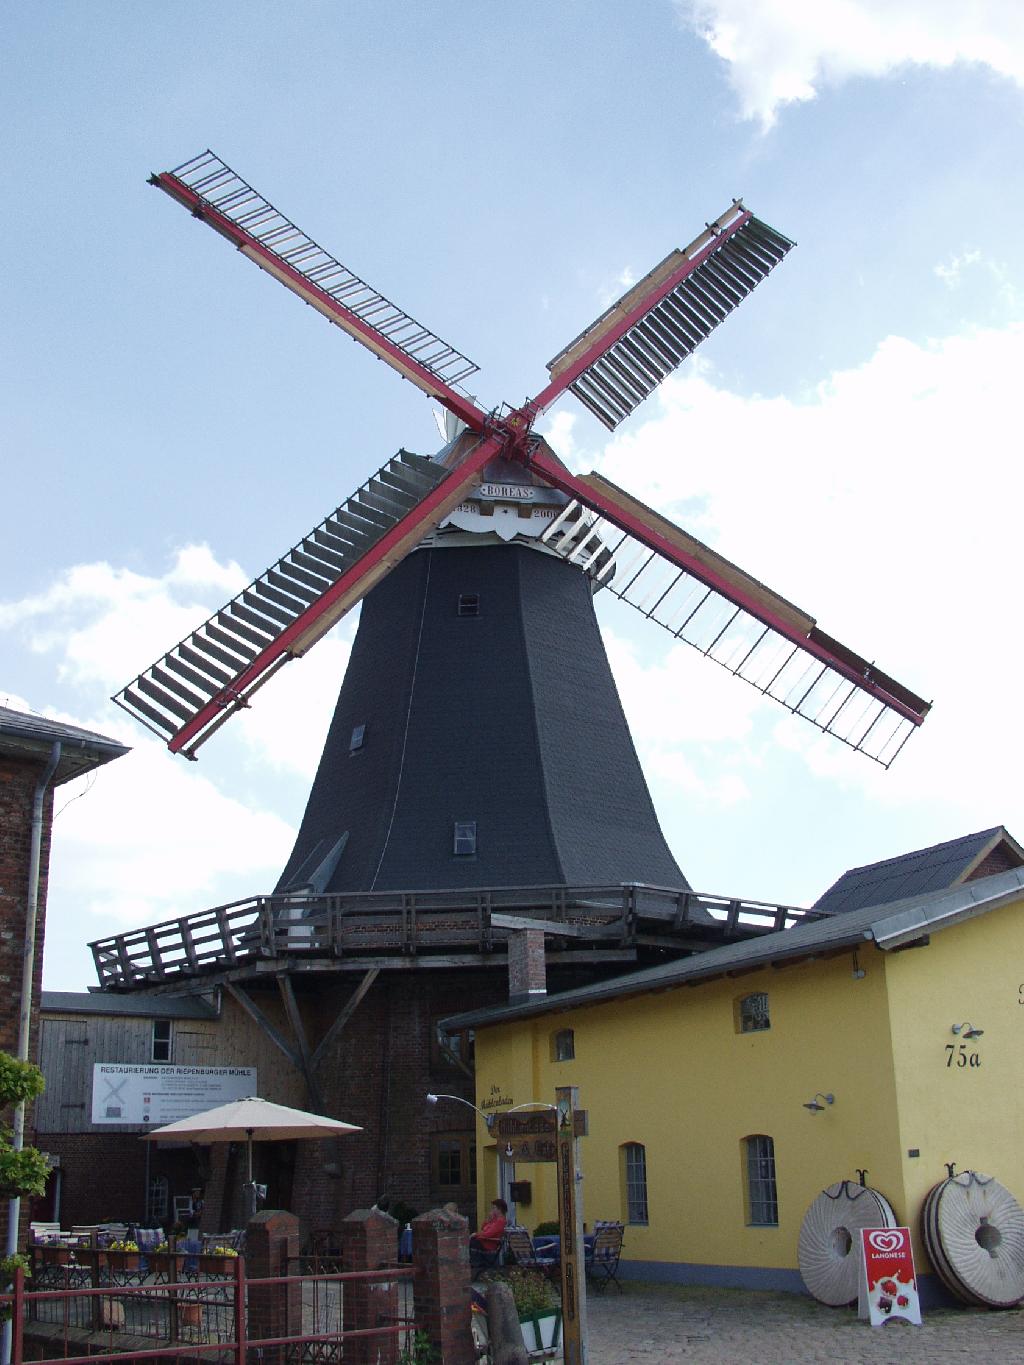 Riepenburger Mühle in Hamburg